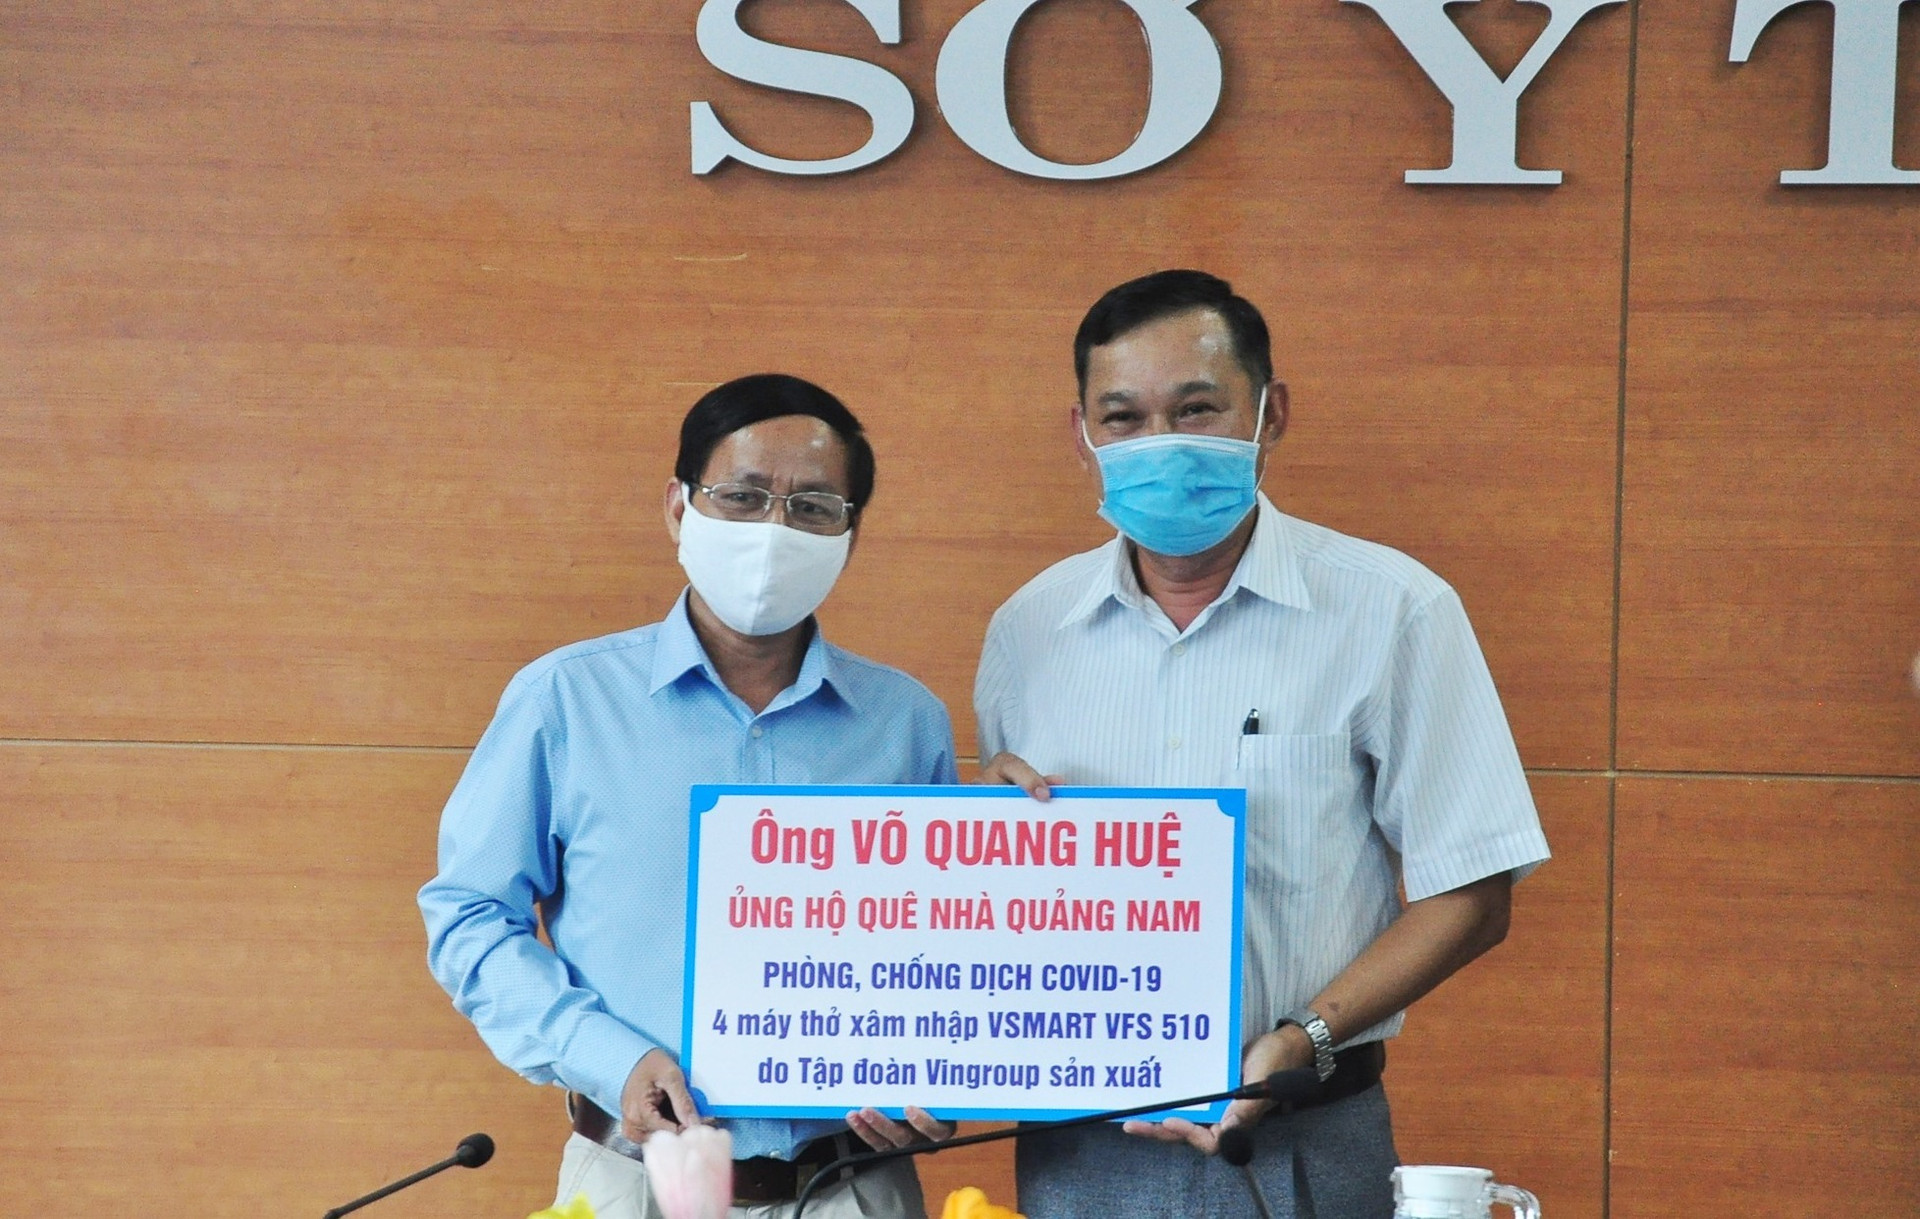 Đại diện cho gia đình doanh nhân Võ Quang Huệ trao biểu trưng 4 máy thở xâm nhập VSMART VFS - 510 (trị giá 740 triệu đồng) cho Sở Y tế. Ảnh: VINH ANH